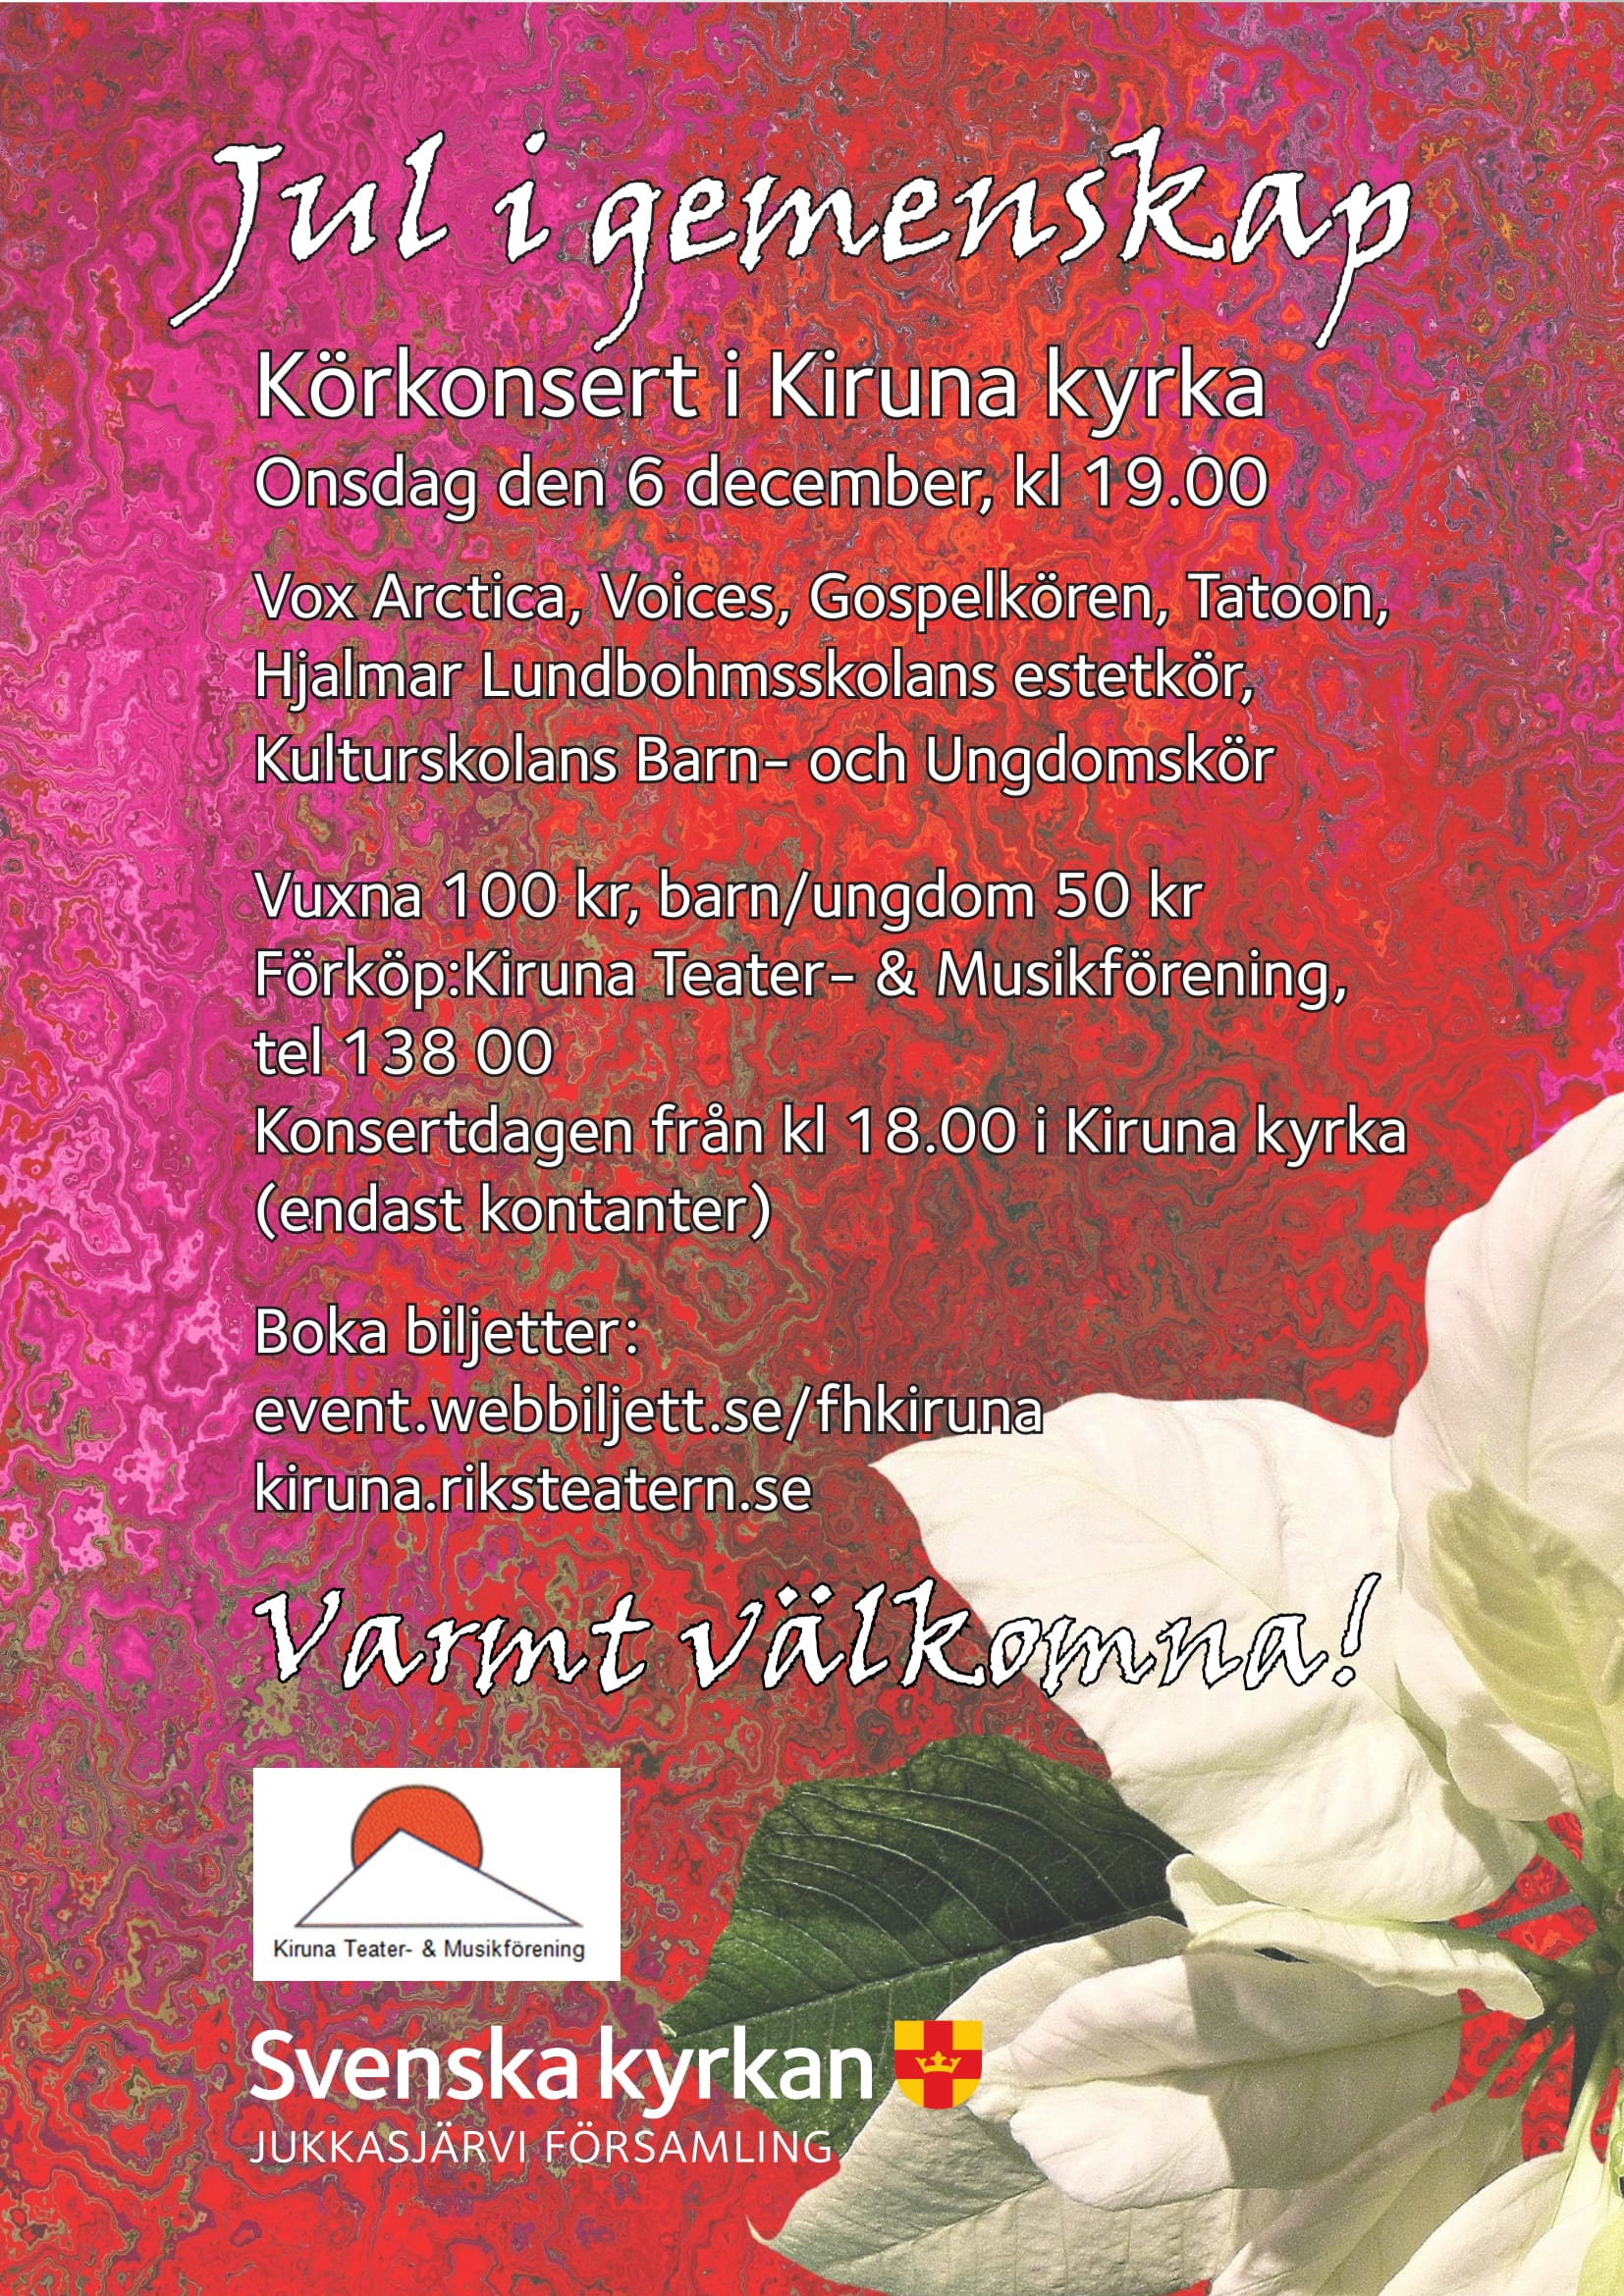 Affisch för Jul i gemenskap på Musikföreställning i Kiruna på Kiruna Folkets Hus